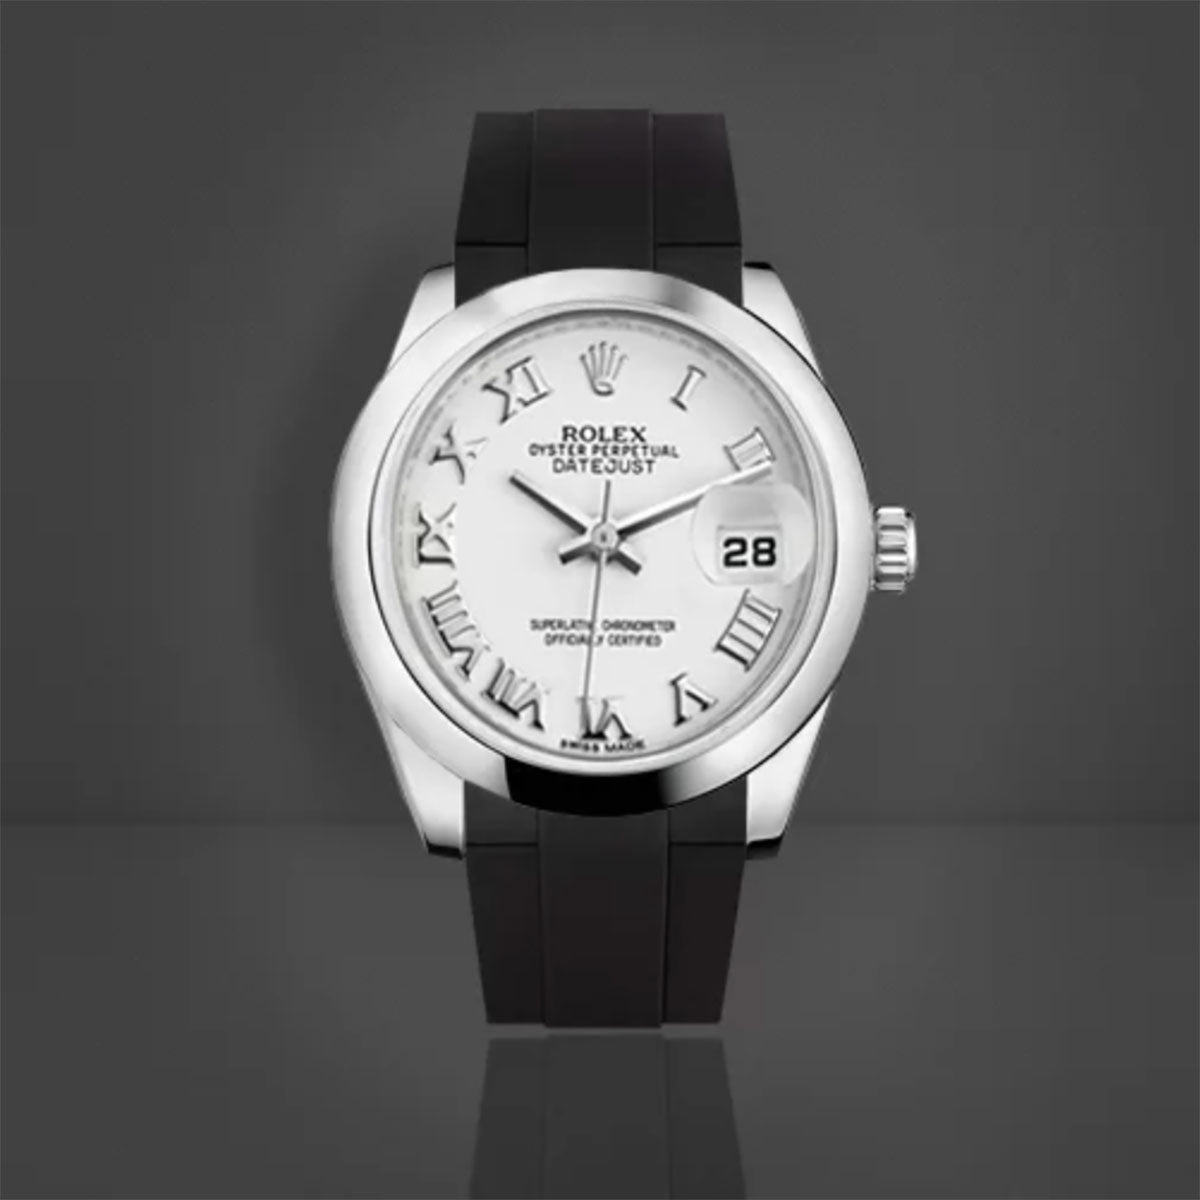 Rolex Jubilee / President Bracelet - Rubber B - Bracelet caoutchouc pour Oyster Perpetual / Datejust 31mm - Série boucle ardillon - watch band leather strap - ABP Concept -